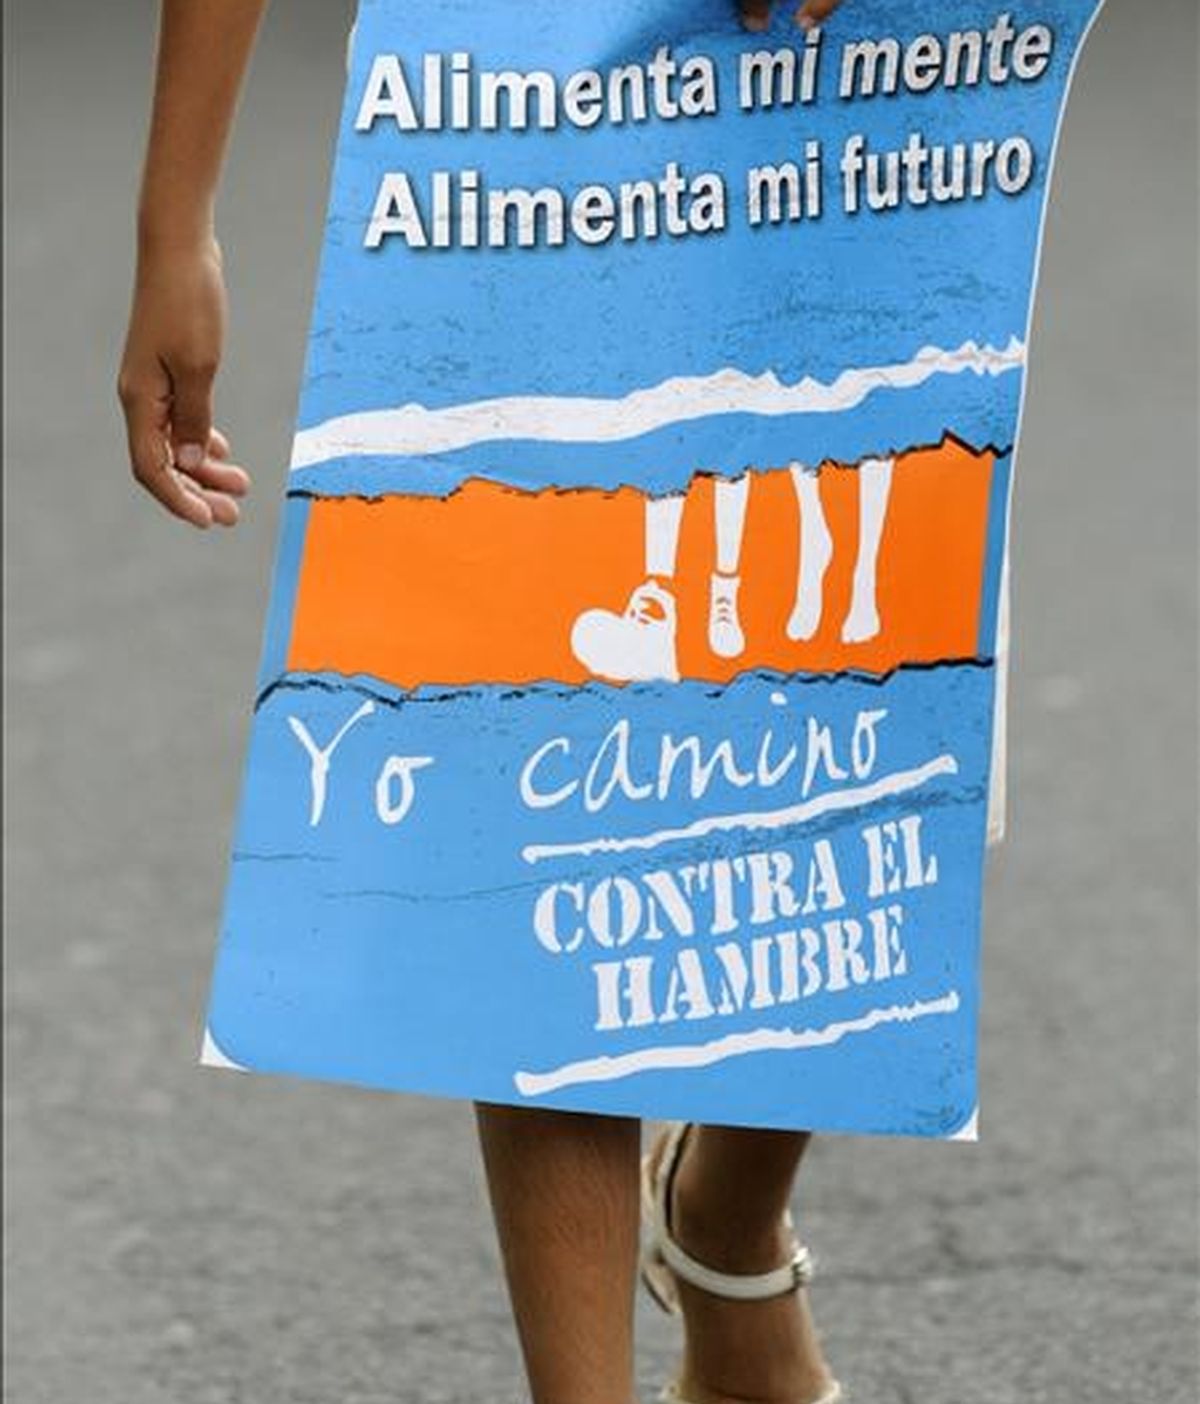 La incidencia de la desnutrición crónica infantil alcanza al 52 por ciento de los menores de cinco años en la provincia de Chimborazo. EFE/Archivo